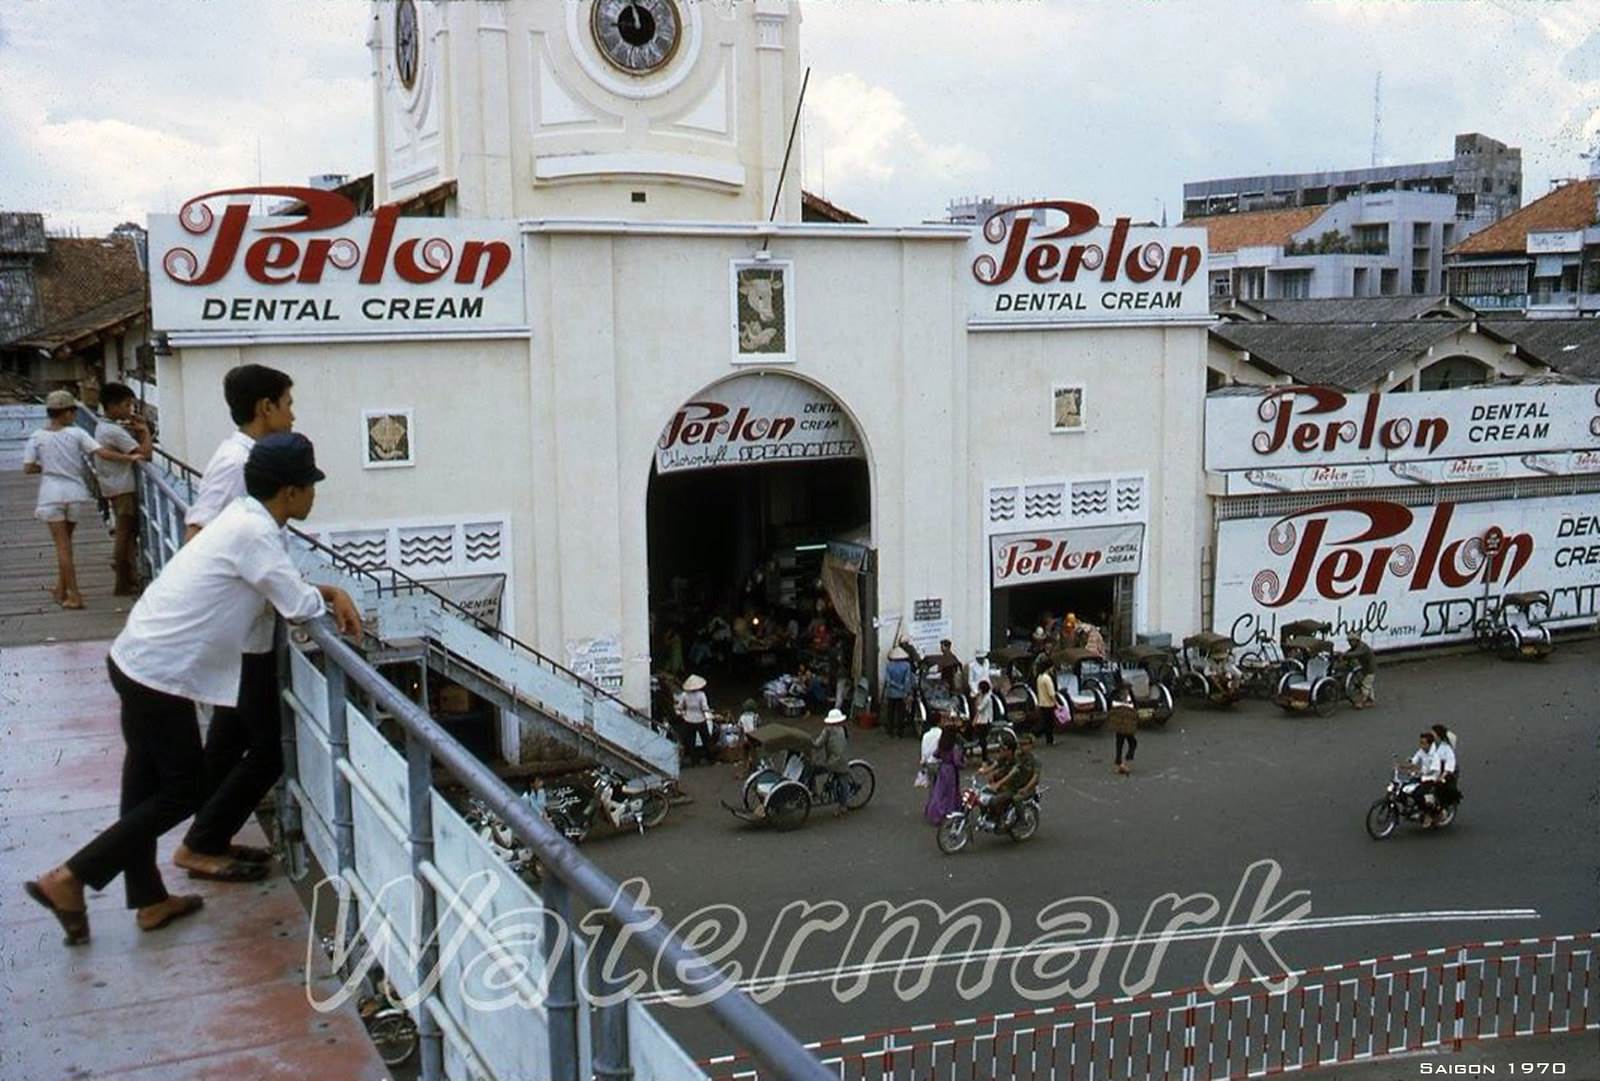 SAIGON 1970 - Chợ Bến Thành nhìn từ tên cầu vượt bô hành